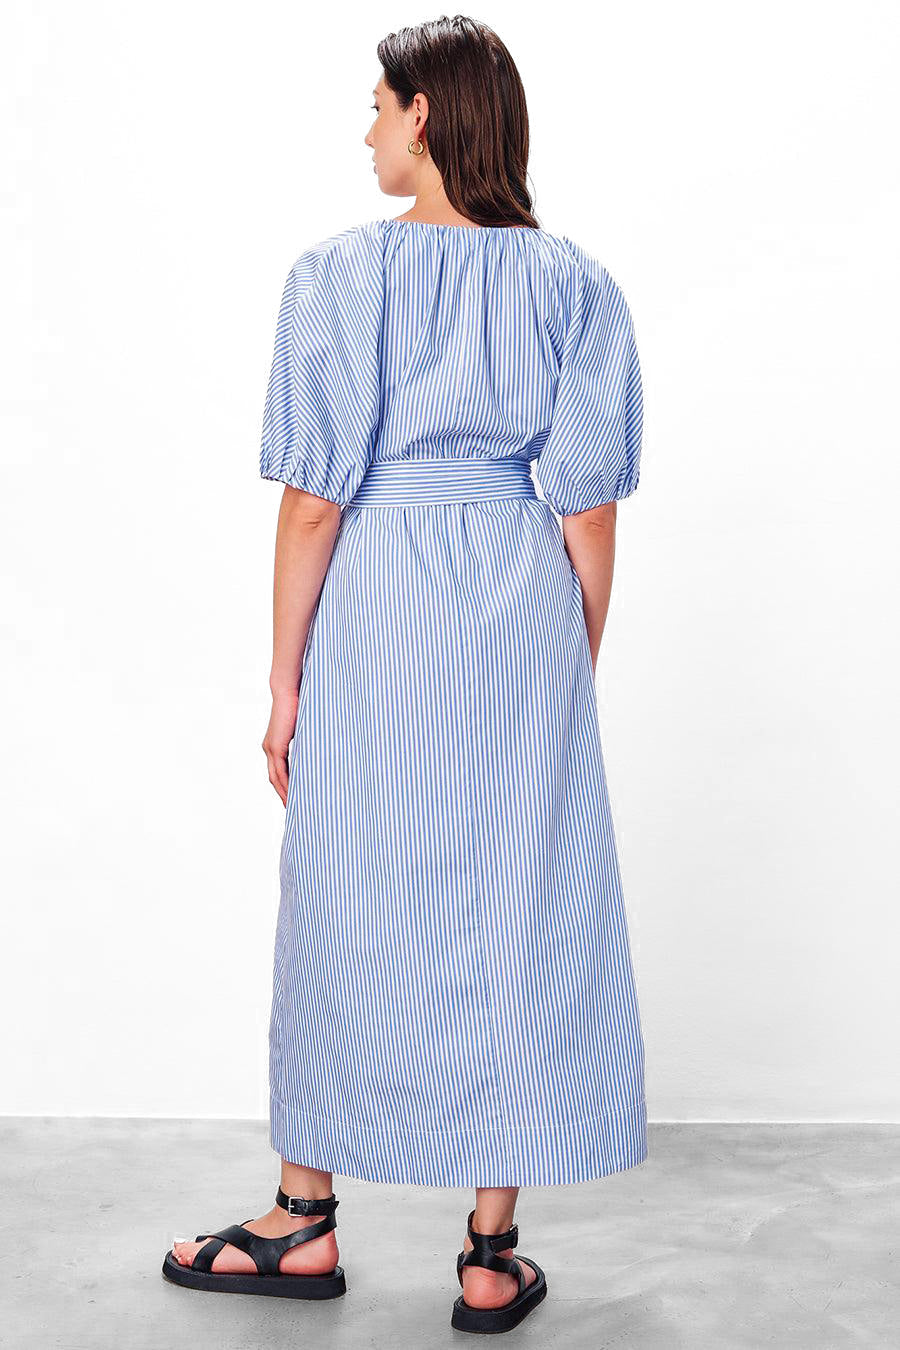 Alora Dress in Blue & White by Mara Hoffman